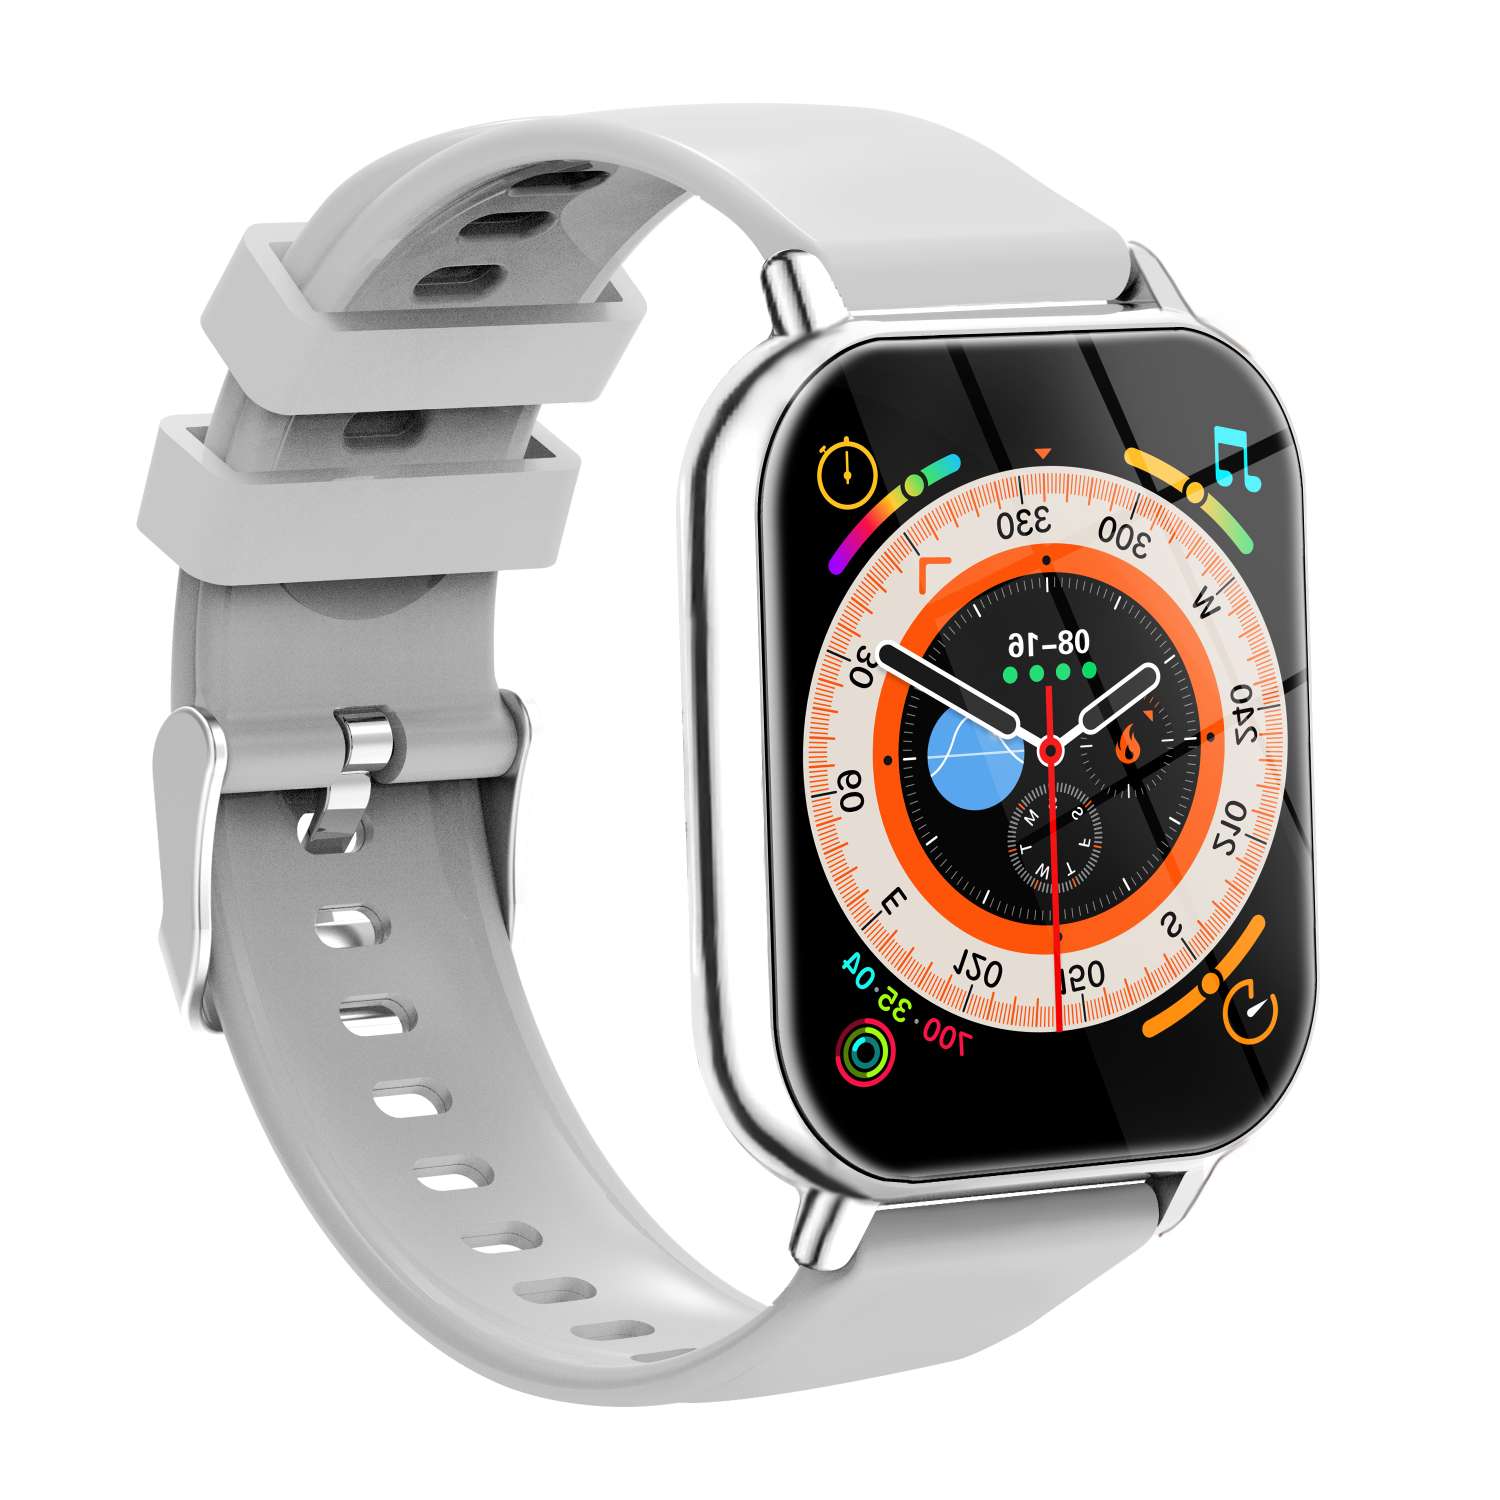 Watch智能手表 数码电脑配件 智能手环 运动健康监测 设备互联 高科技时尚手表H20